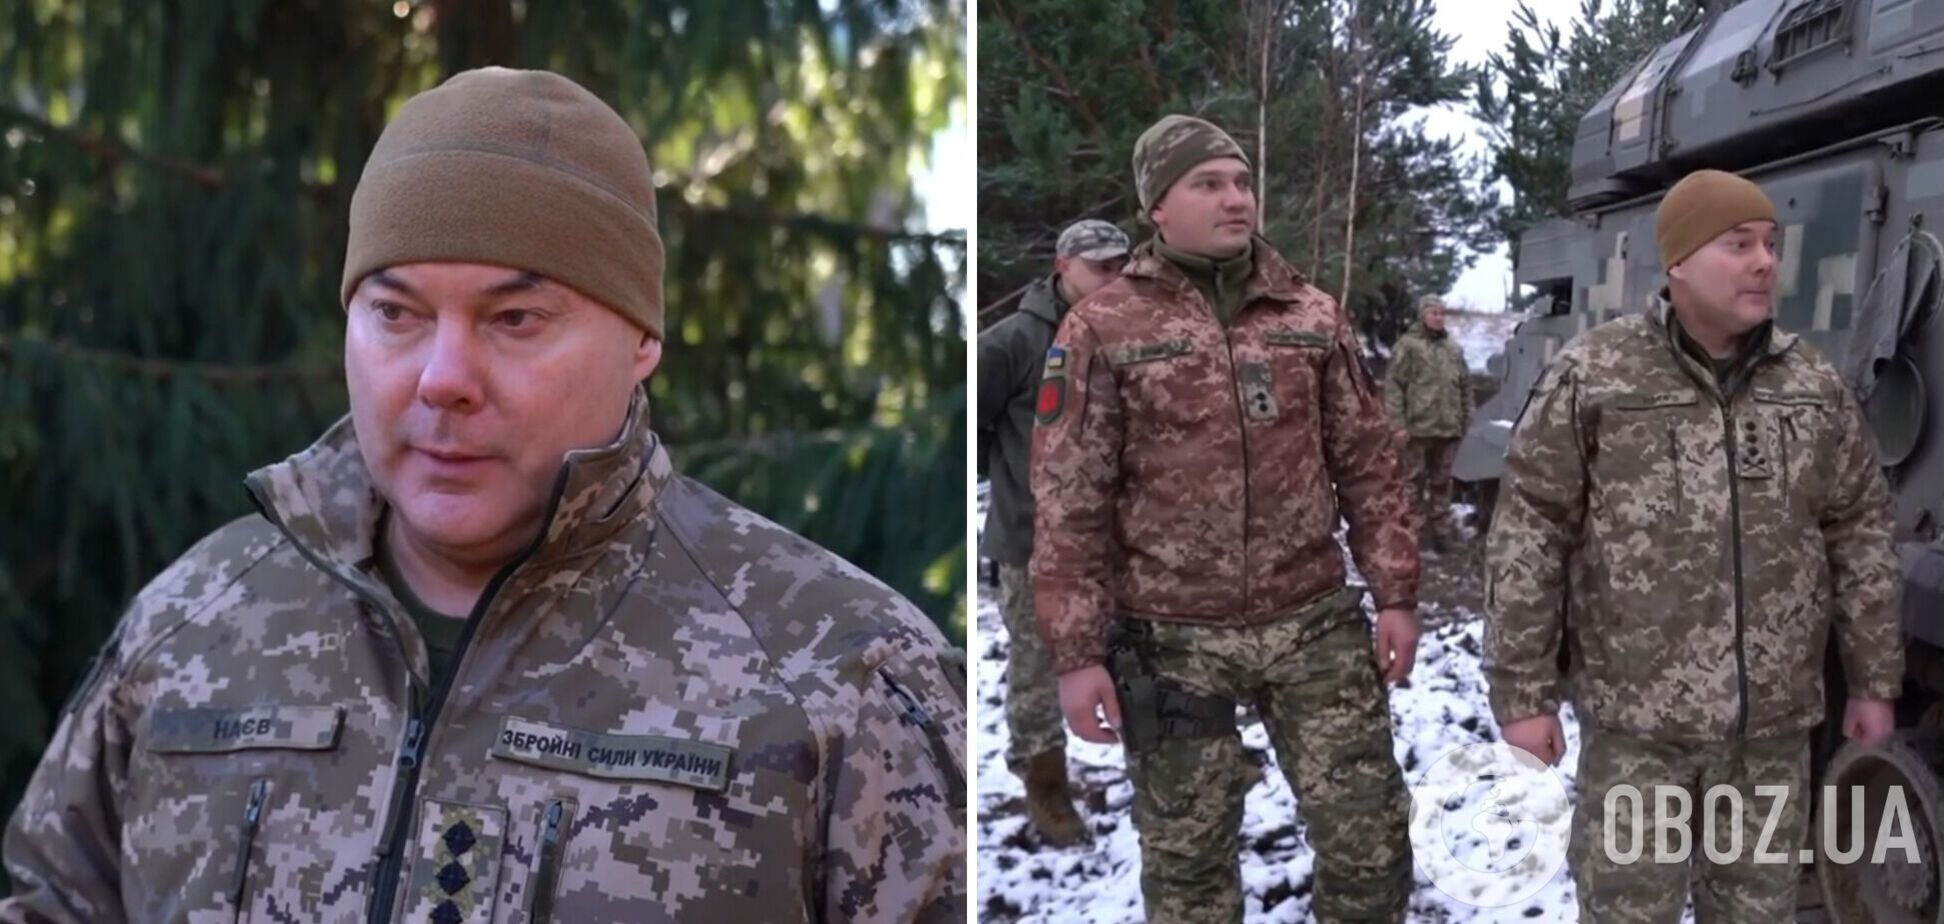 'Каждая цель в воздухе должна быть сбита': Наев рассказал, как работает украинское ПВО, и назвал наибольшую потребность. Видео